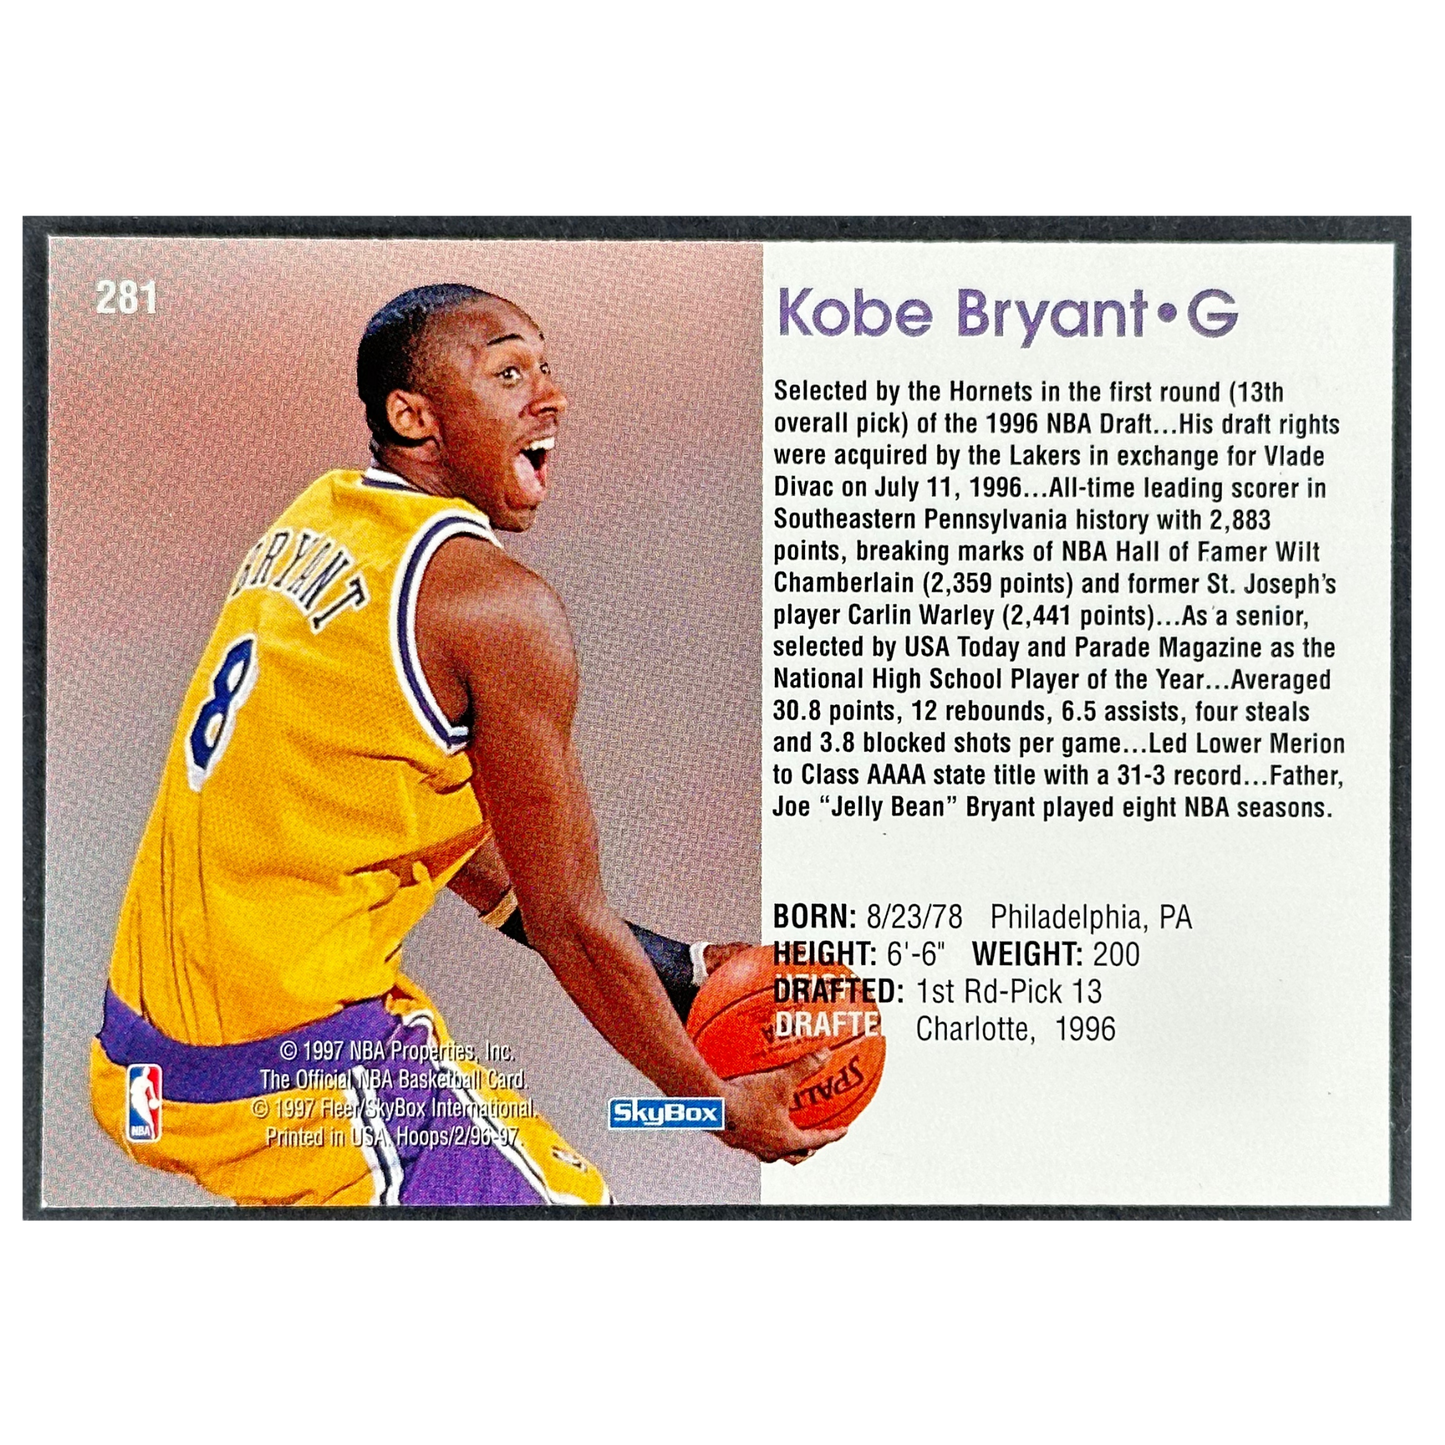 Kobe Bryant 1996-97 Skybox Hoops RC Rookie Card #281